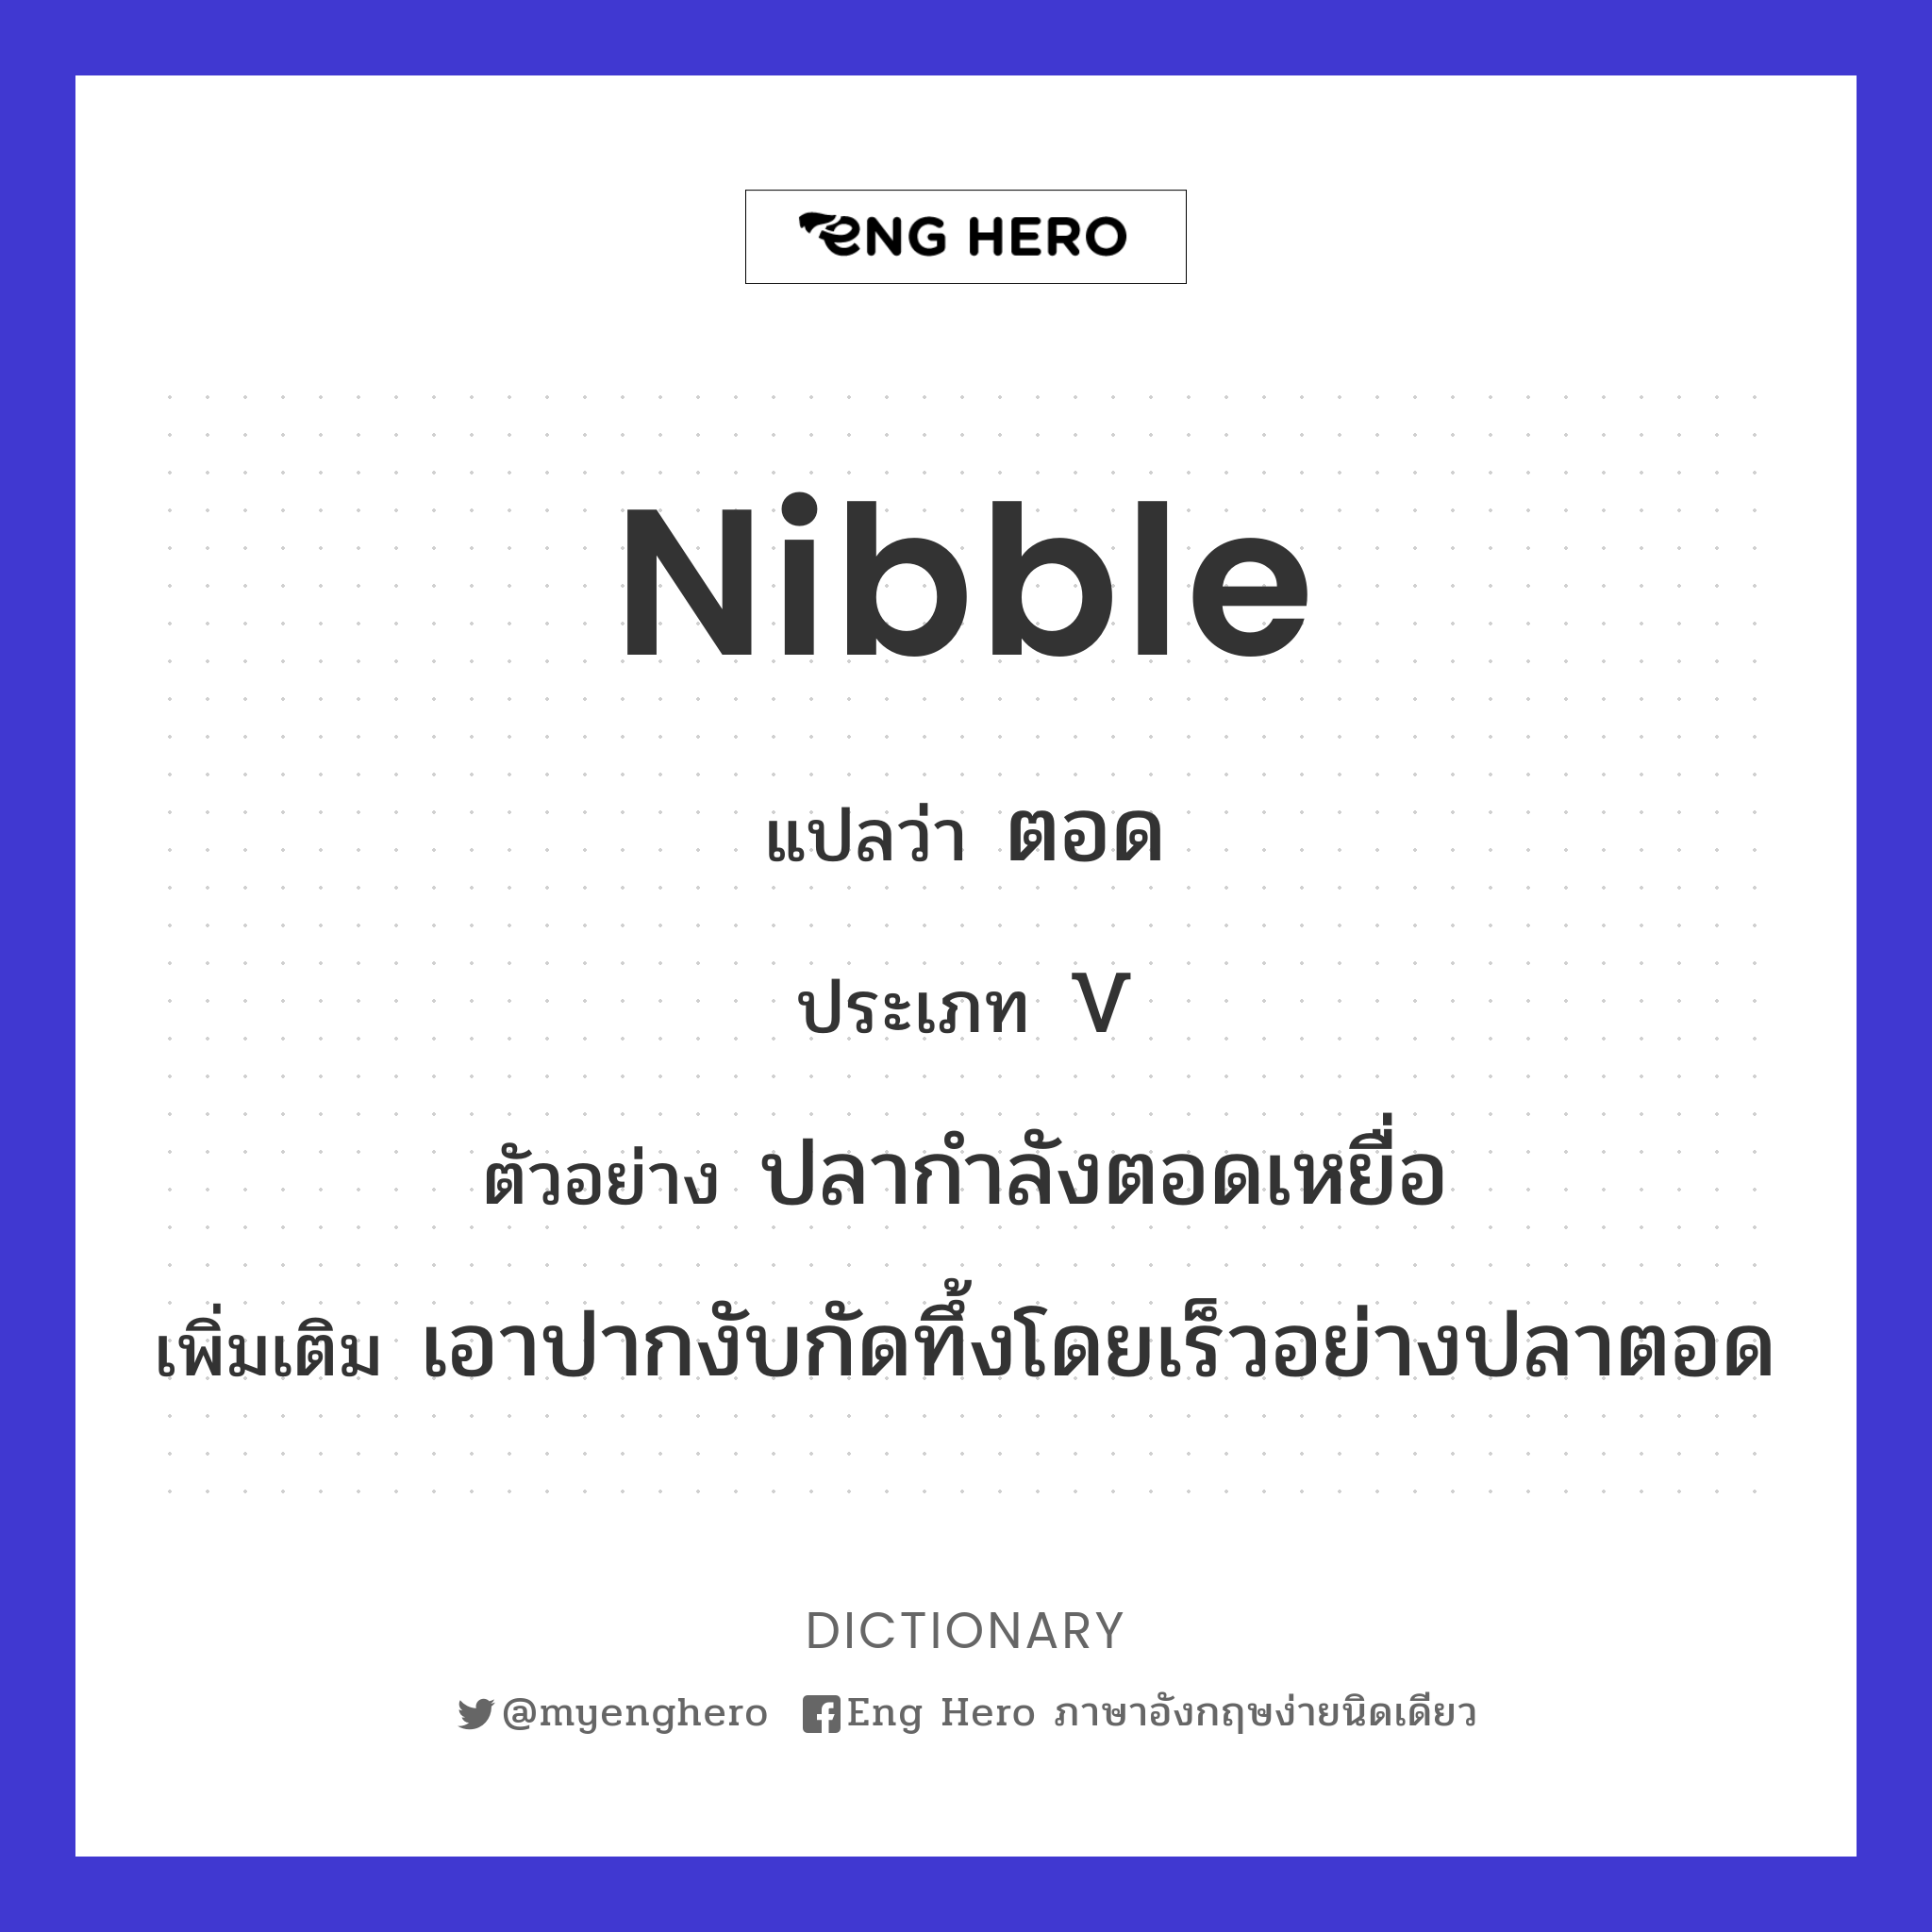 nibble